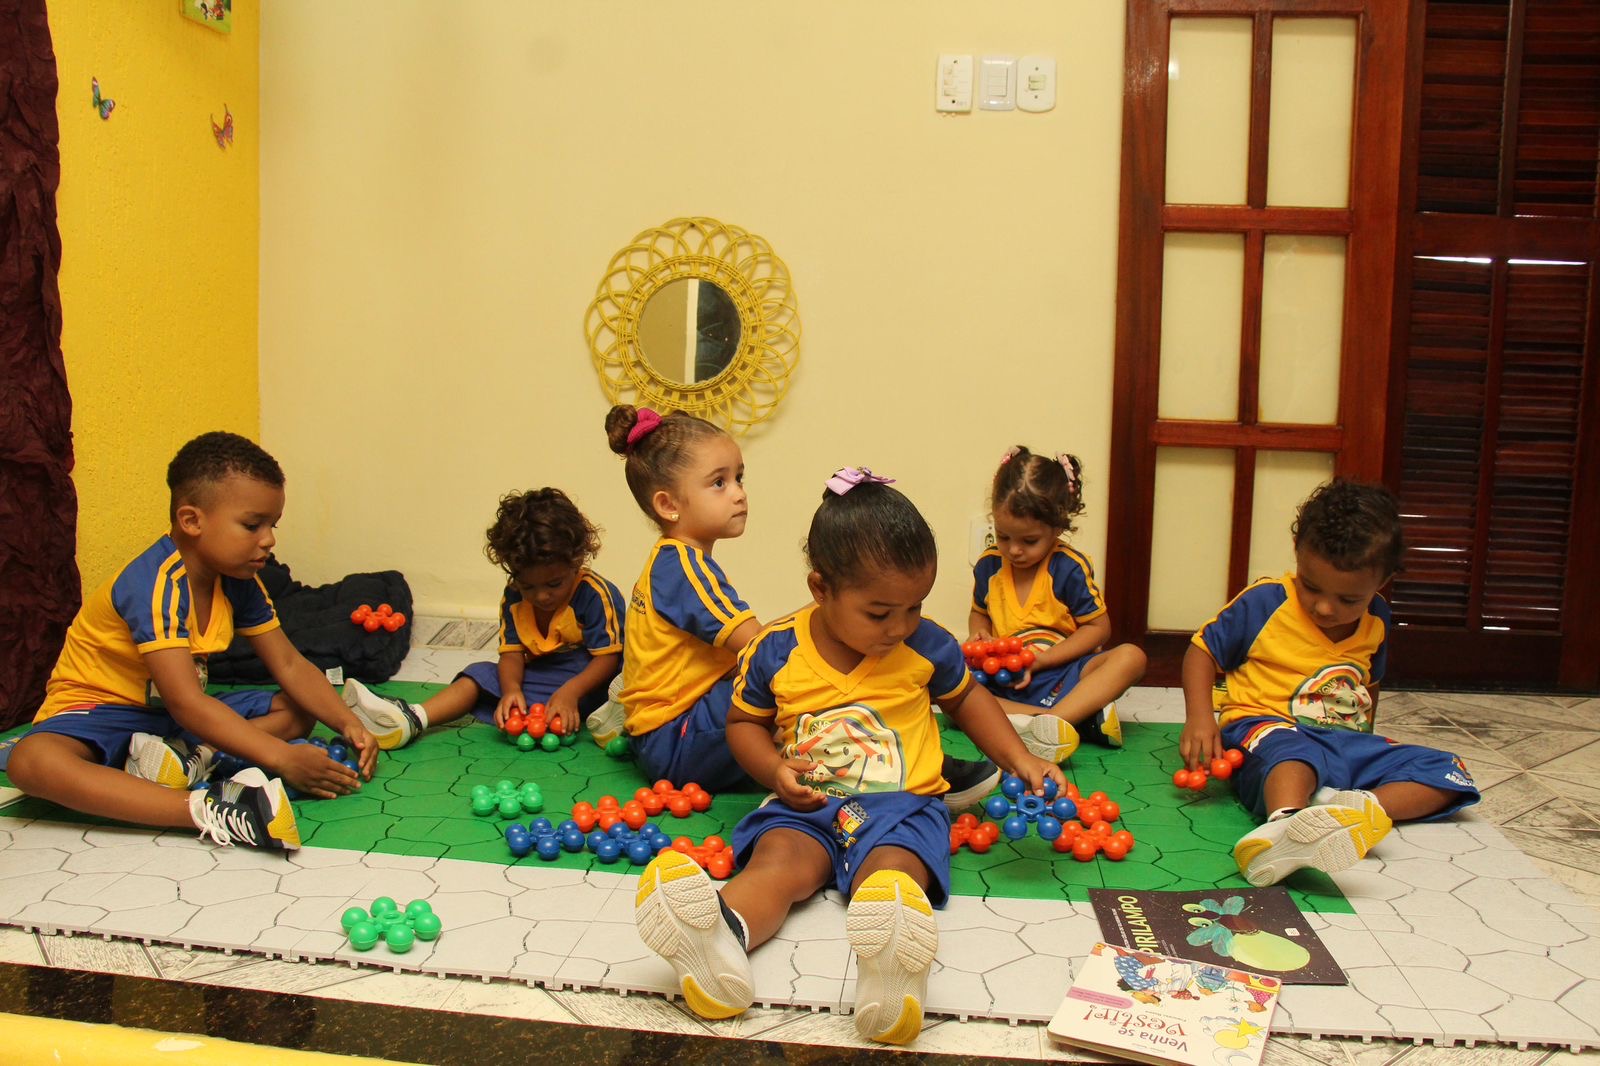 Prefeitura de Araruama inaugura mais uma Casa Creche no bairro Areal